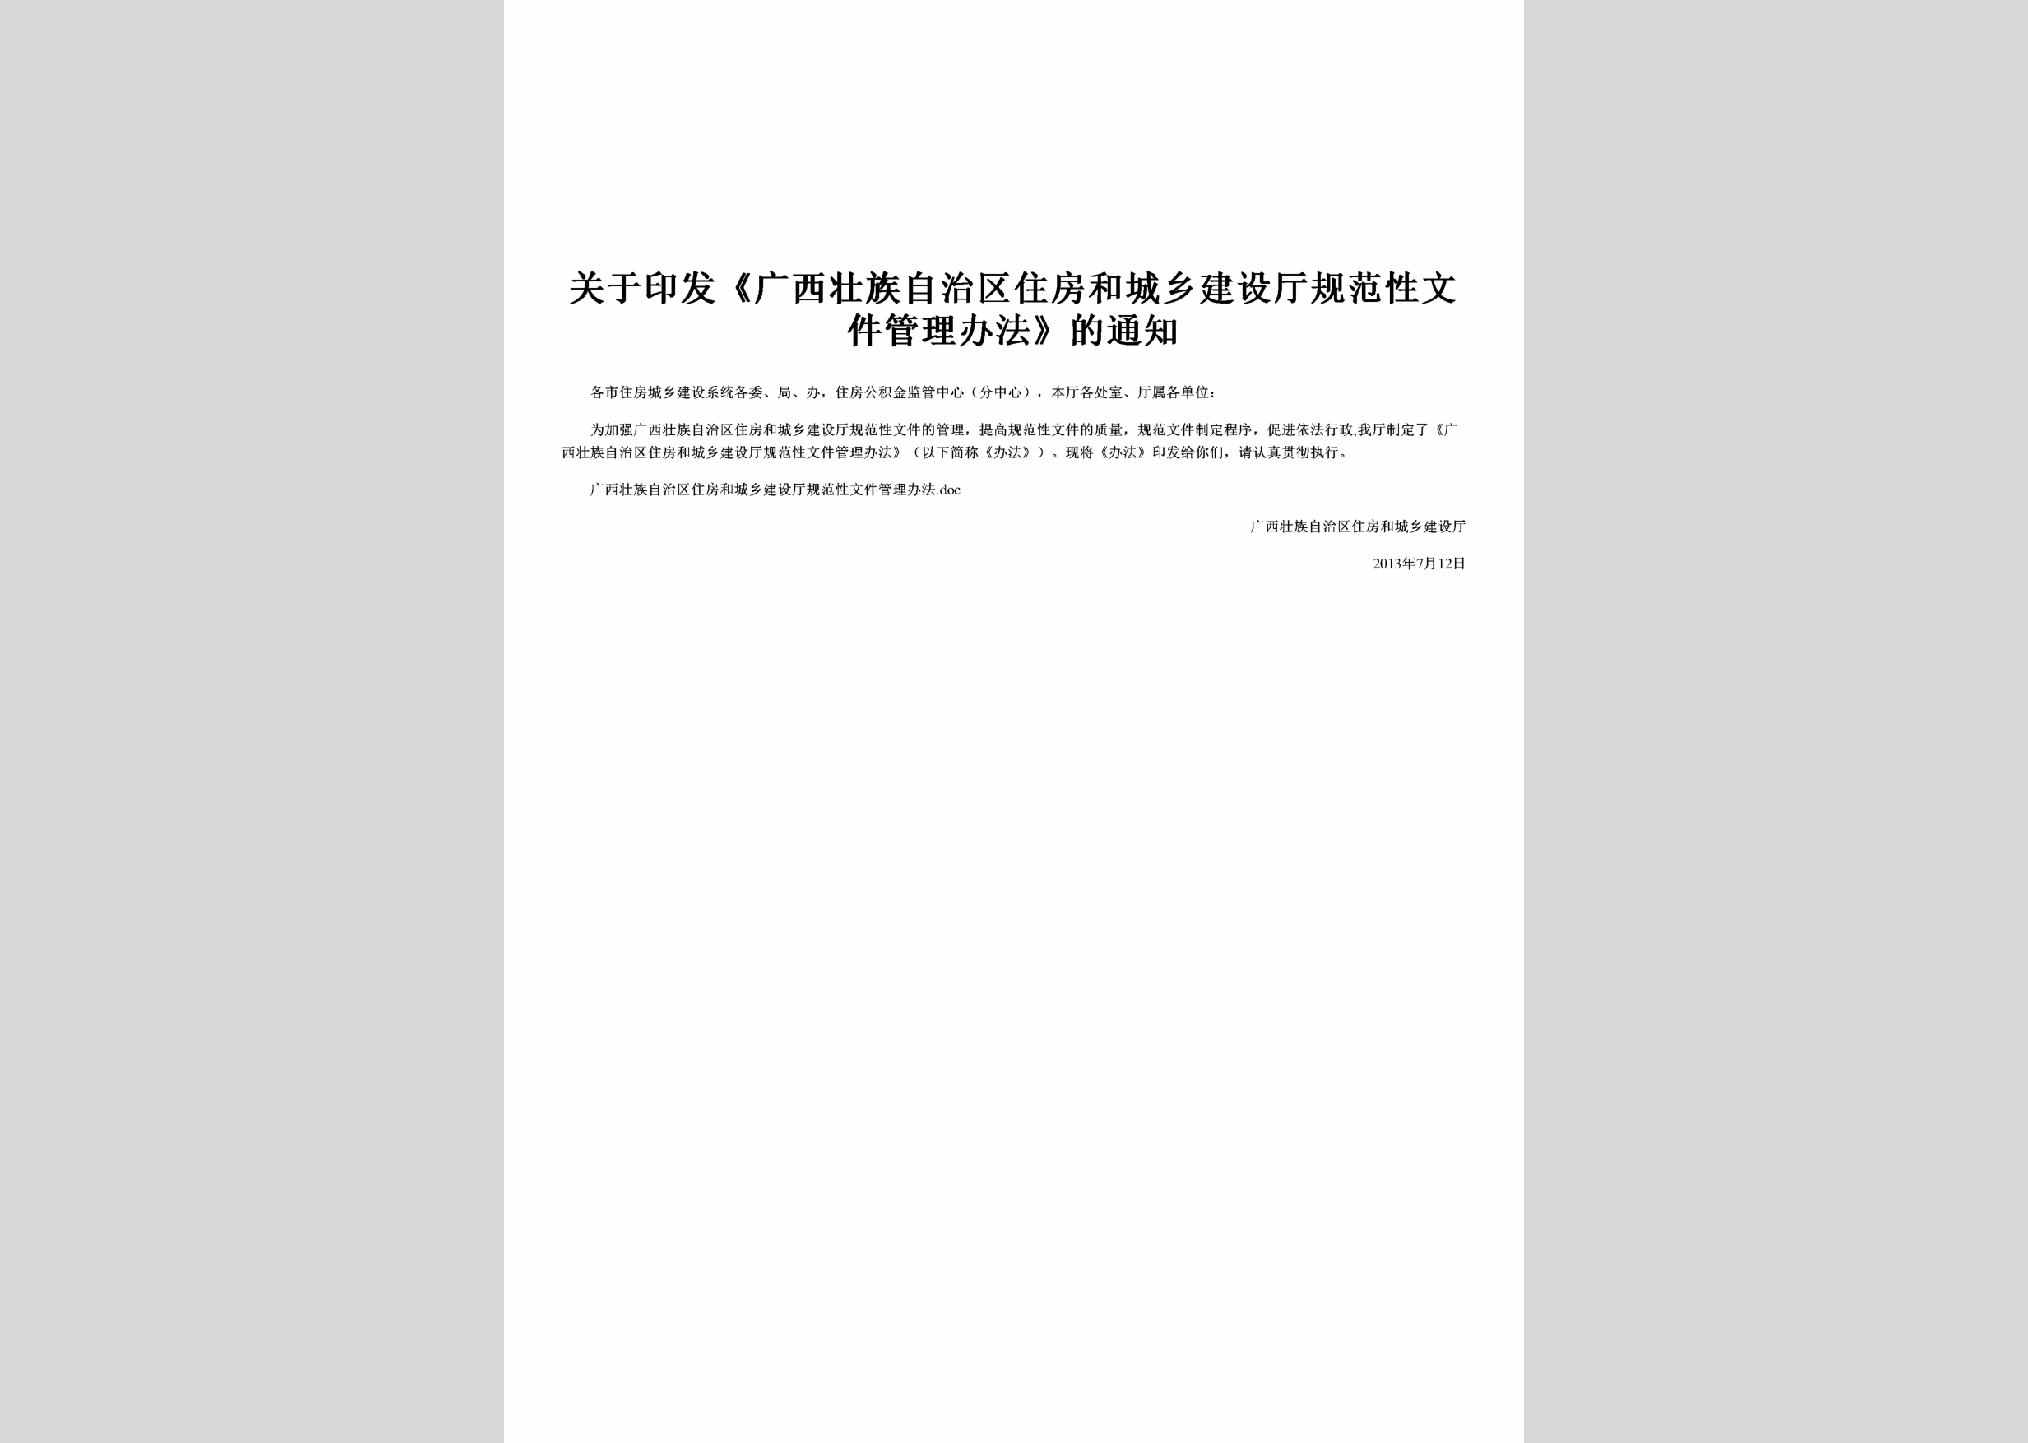 桂建法[2013]5号：关于印发《广西壮族自治区住房和城乡建设厅规范性文件管理办法》的通知